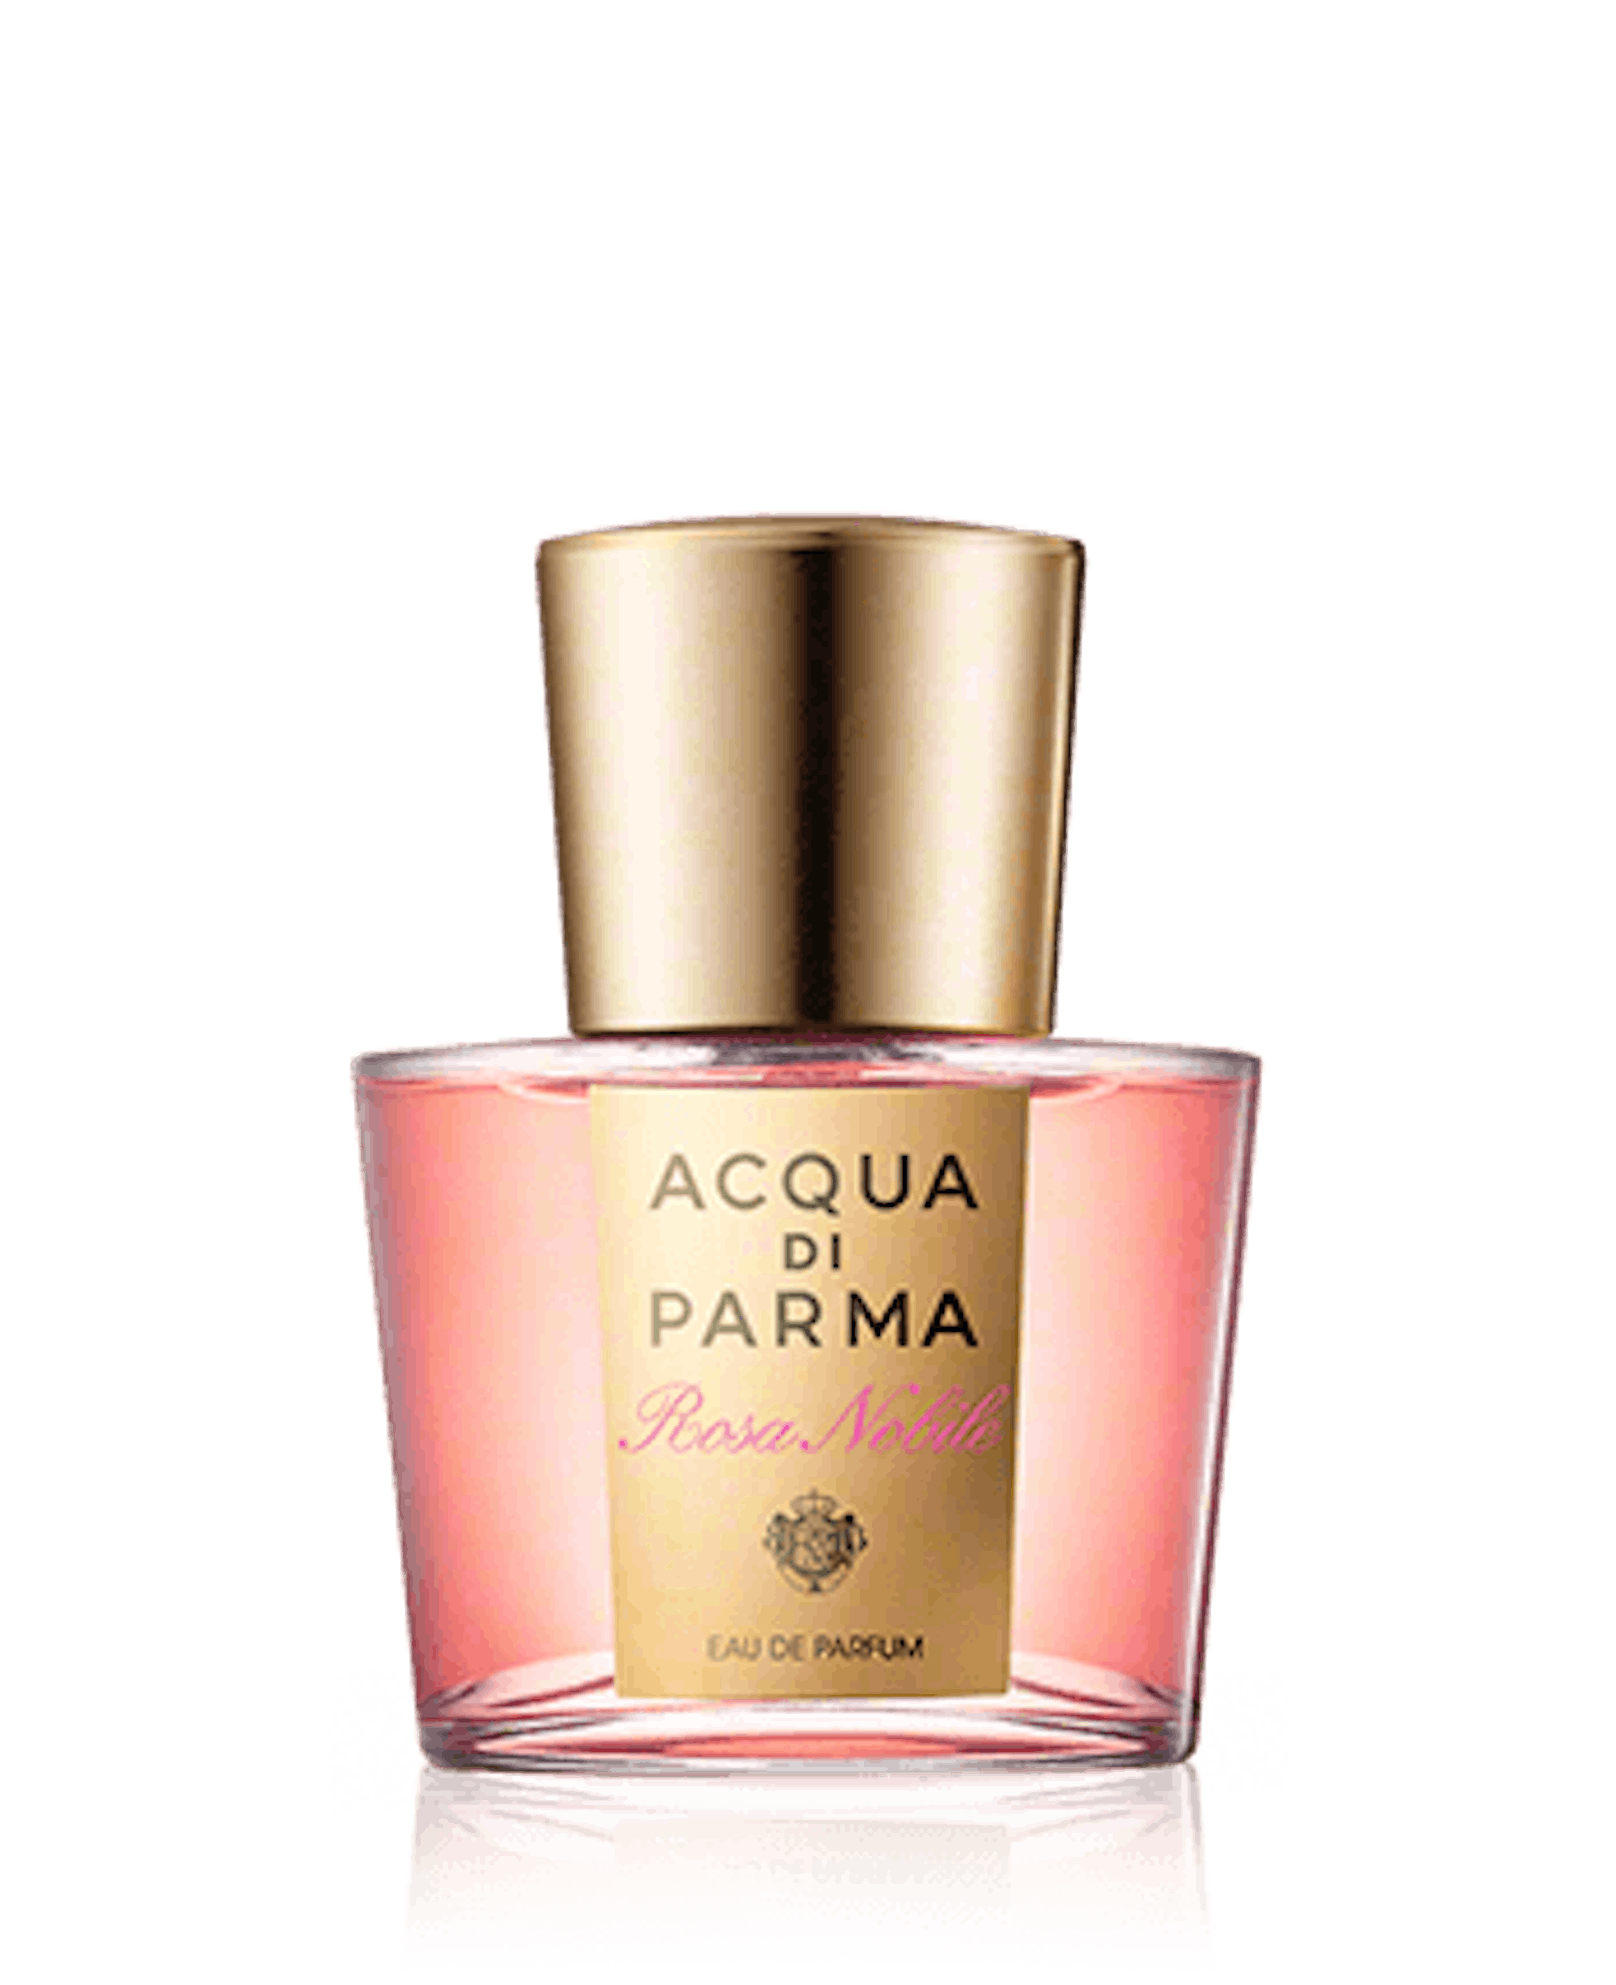 "Rosa Nobile" vom italienischen Haus Acqua di Palma eignet sich für alle eleganten Damen, die sich ihrer Weiblichkeit bewusst sind. Das Parfum beginnt mit einem sizilianischen Mandarine-Duft, gefolgt von einem starken Rose-Aroma und einem raffinierten Mix aus Veilchen, Pfingstrose und Maiglöckchen.